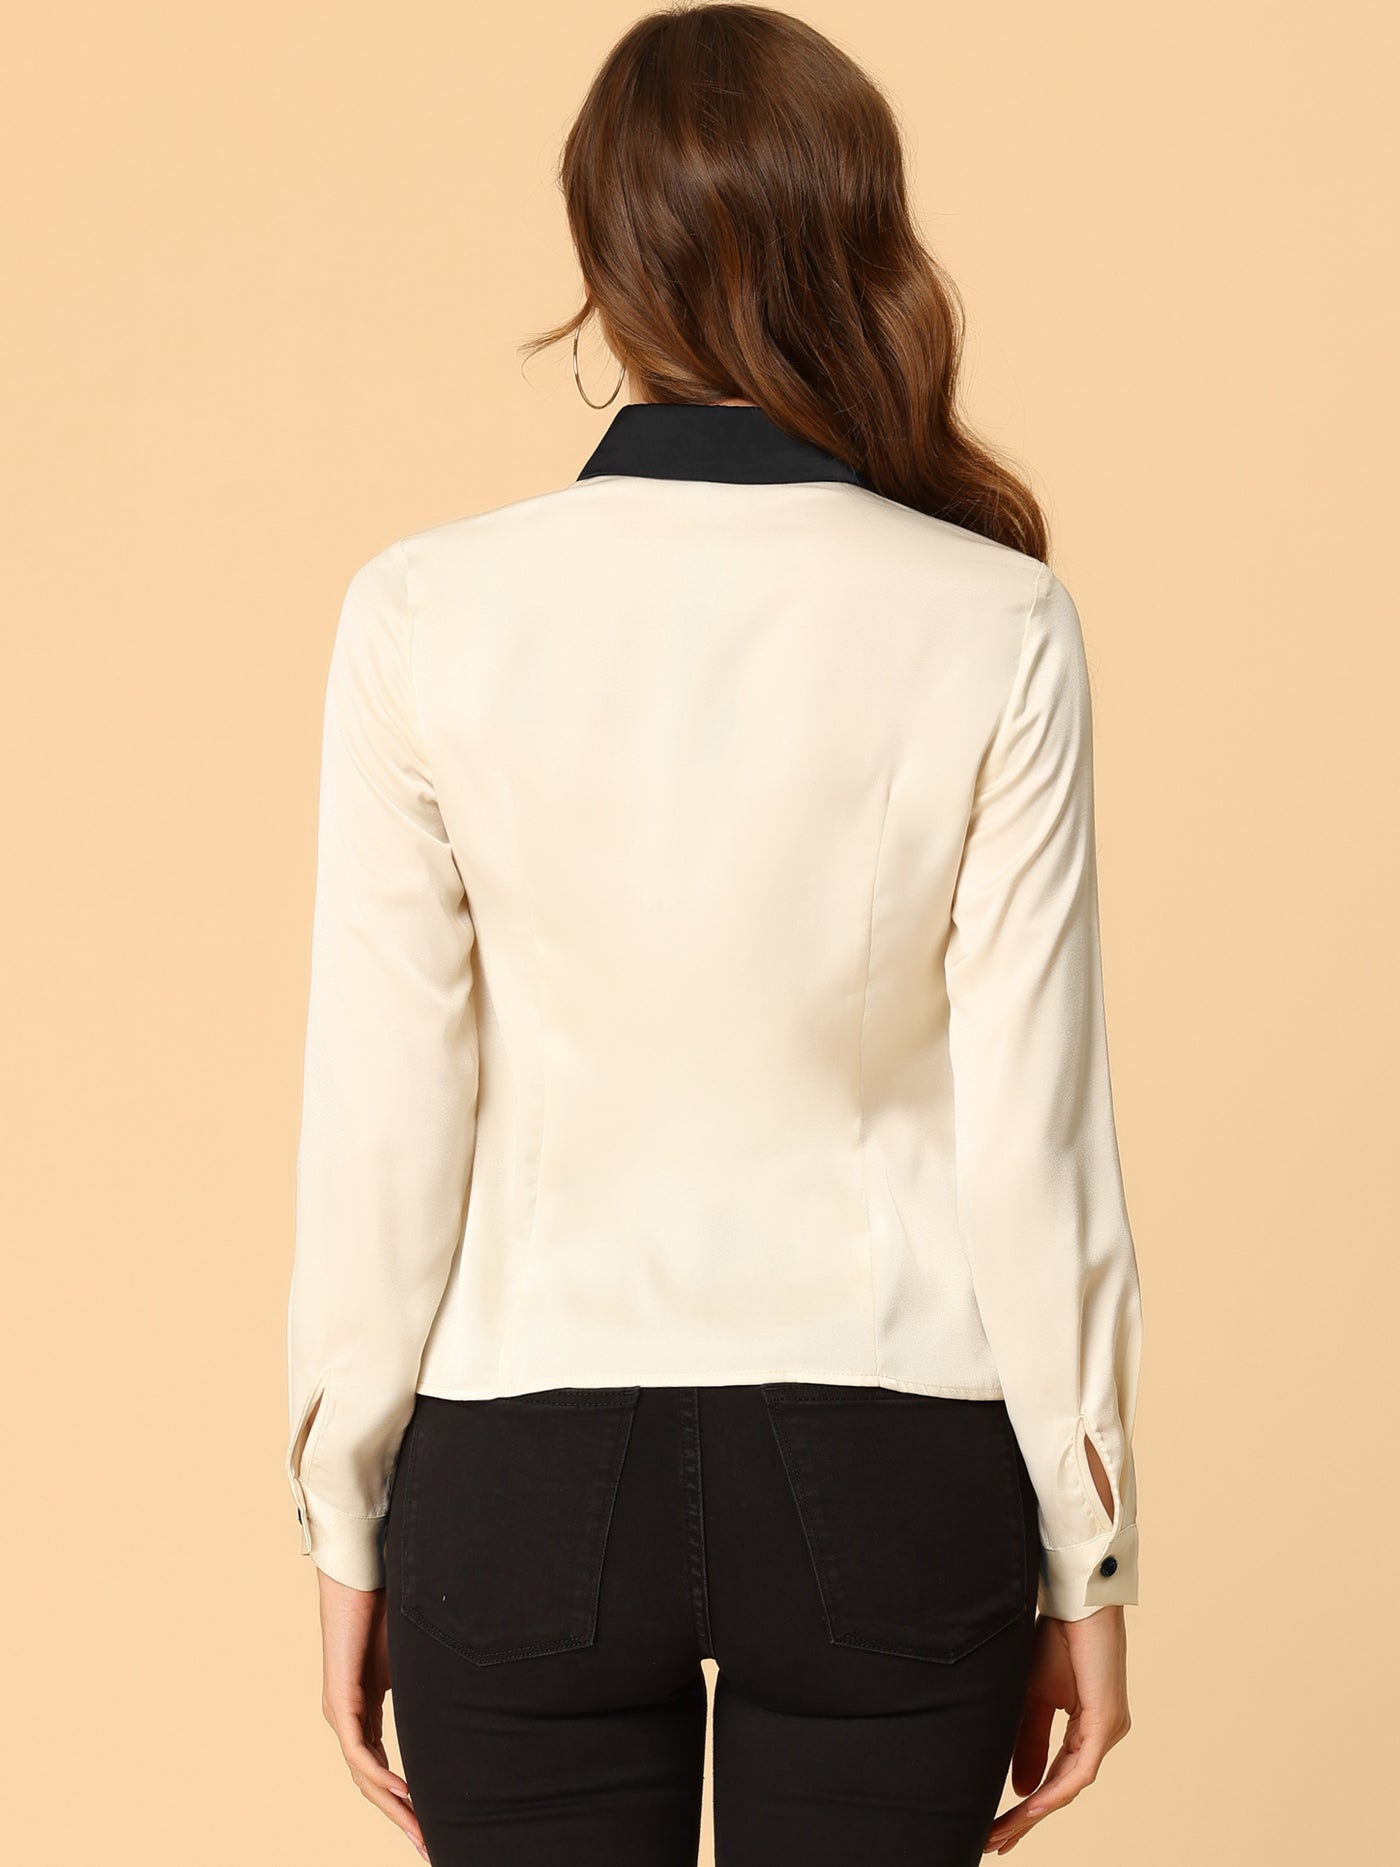 Allegra K Work Tops Long Sleeve Contrast Collar Satin Button Down Shirt